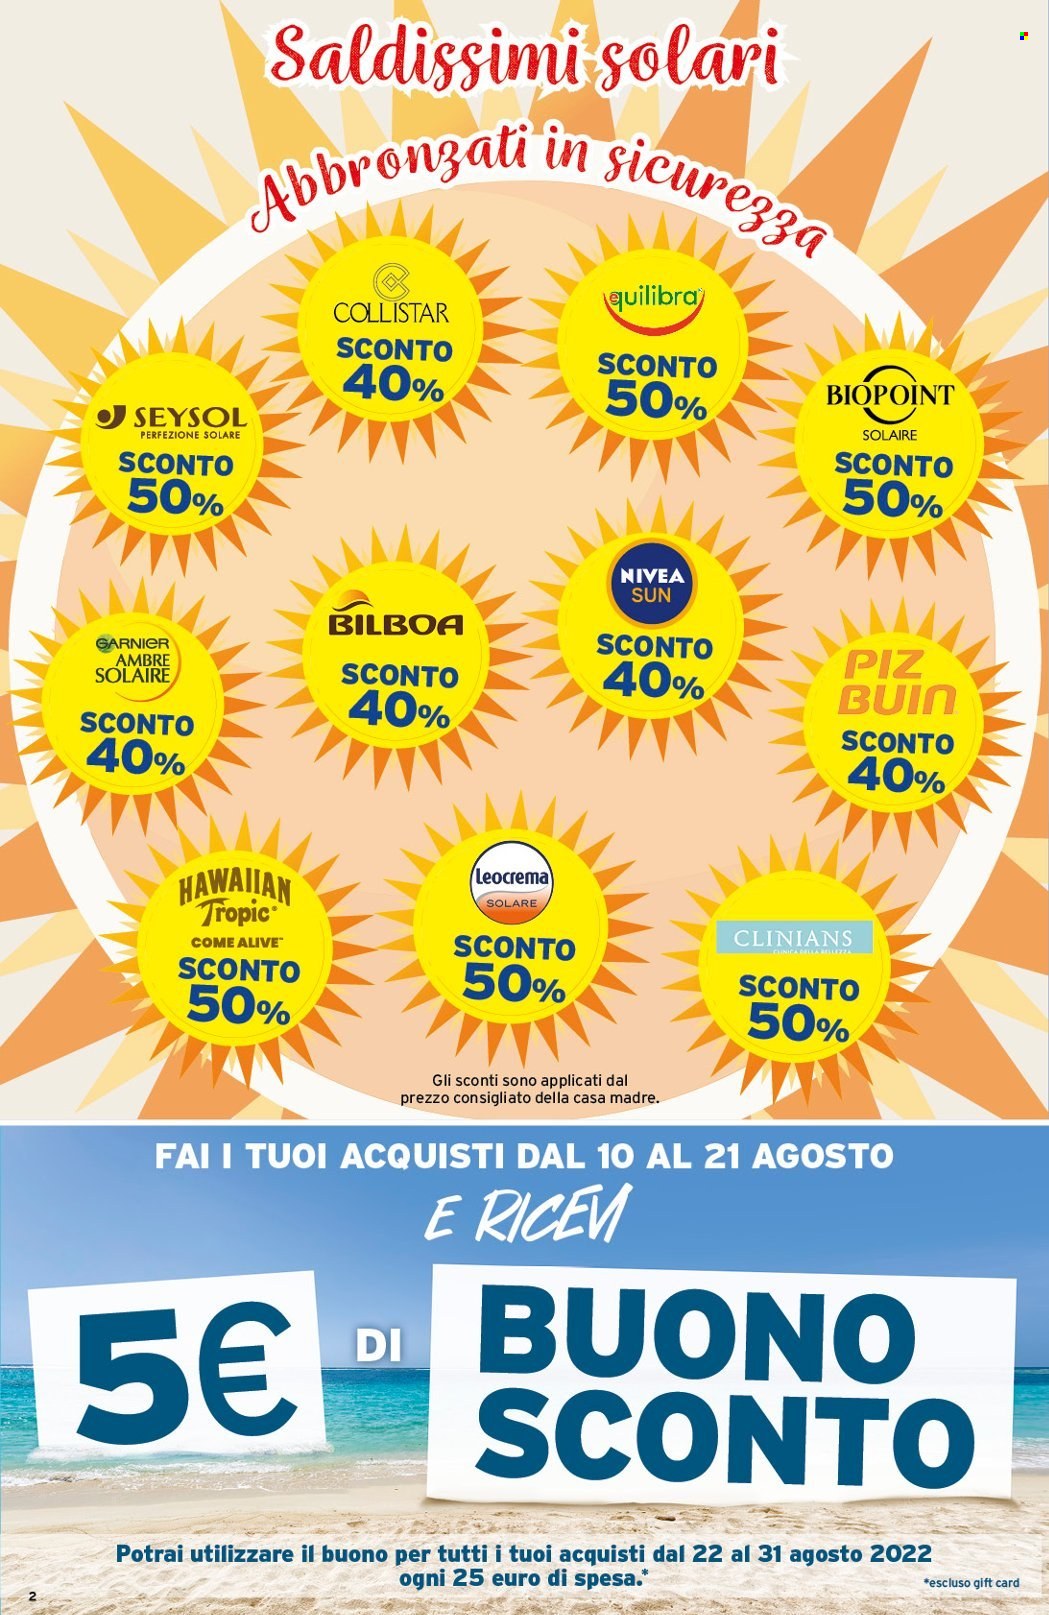 Volantino Sirene Blu - 2.8.2022 - 21.8.2022.